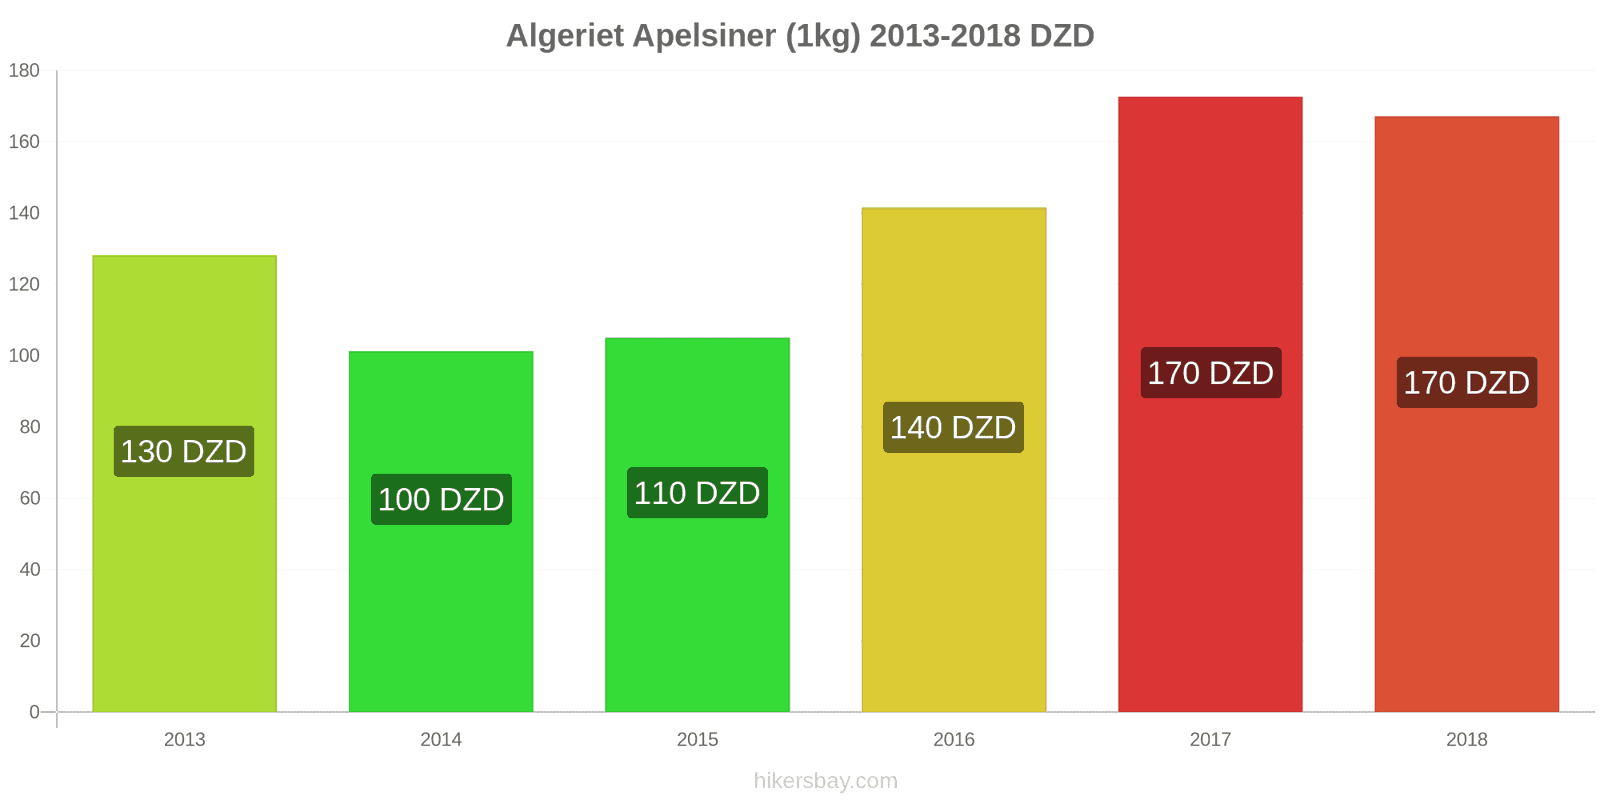 Algeriet prisändringar Apelsiner (1kg) hikersbay.com